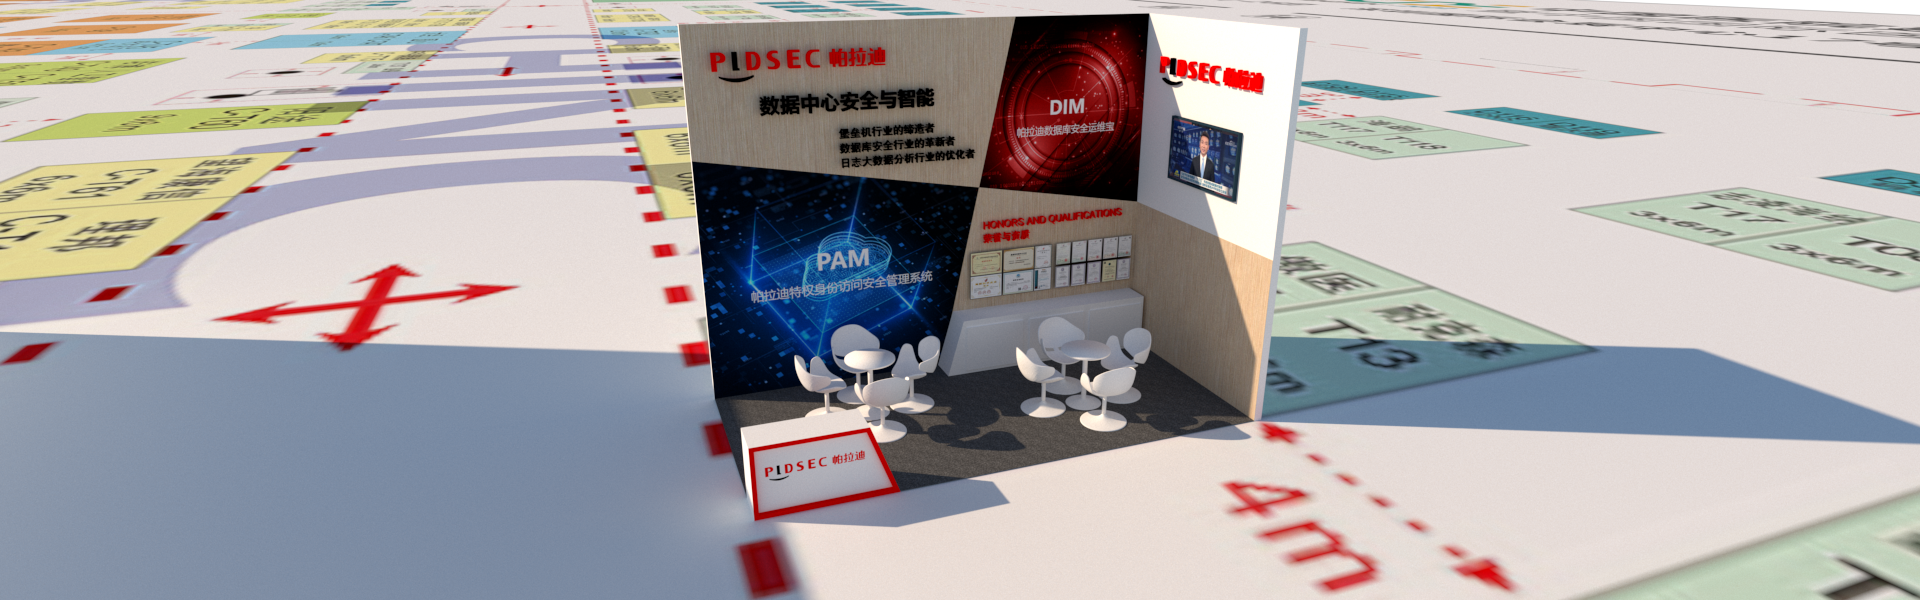 深圳国际会展中心--18平米--展台设计搭建服务